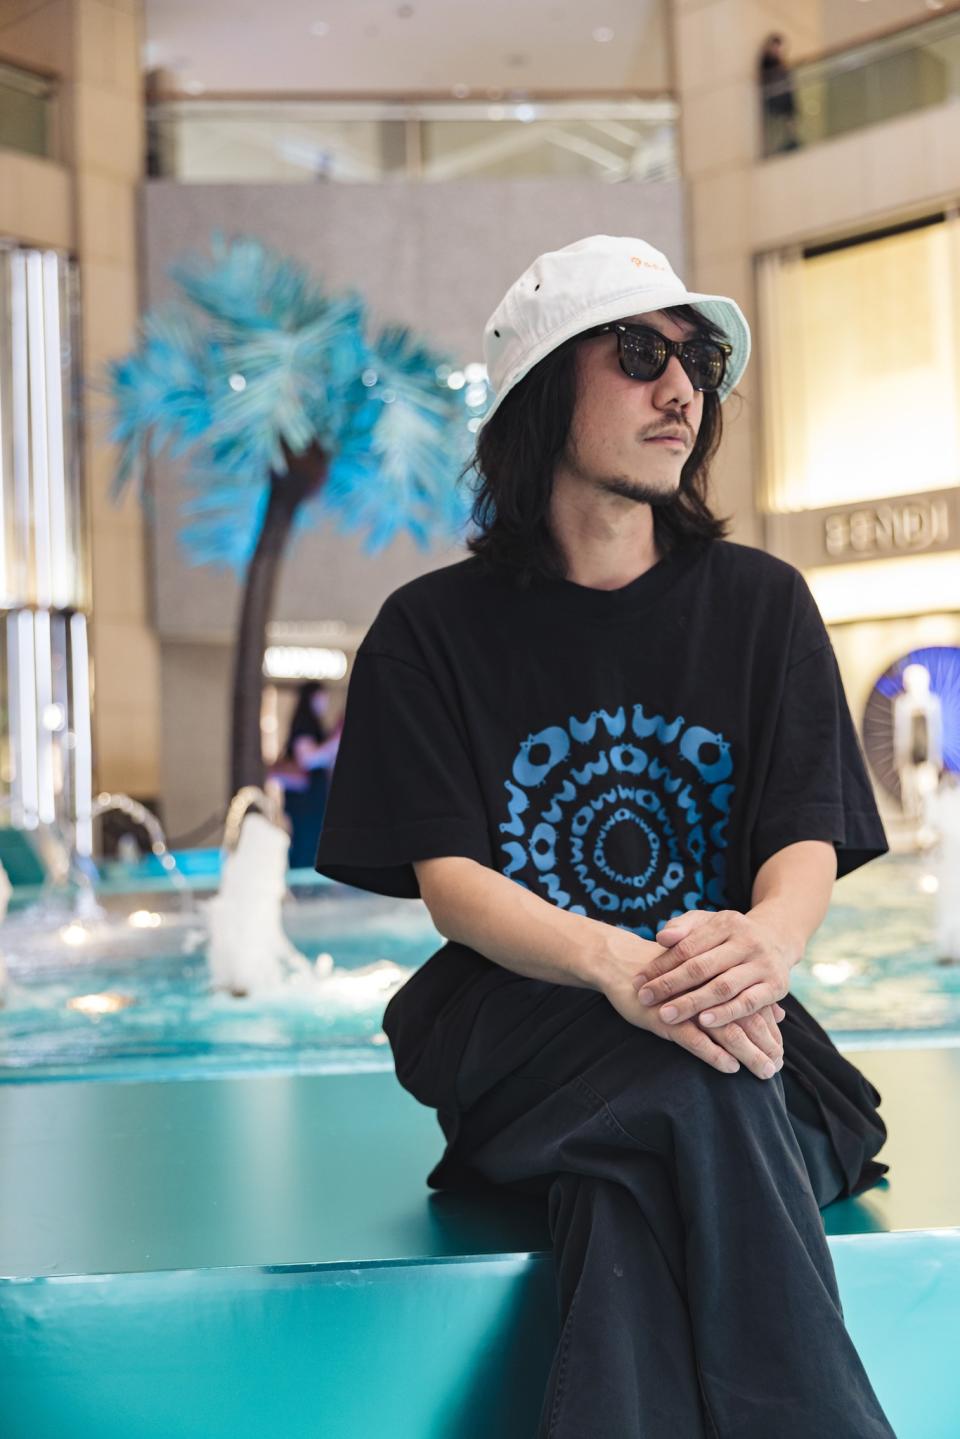 香港好去處｜中環置地廣場變身冰藍色迷幻數碼花園！8月限定日本著名藝術家操刀互動式水池